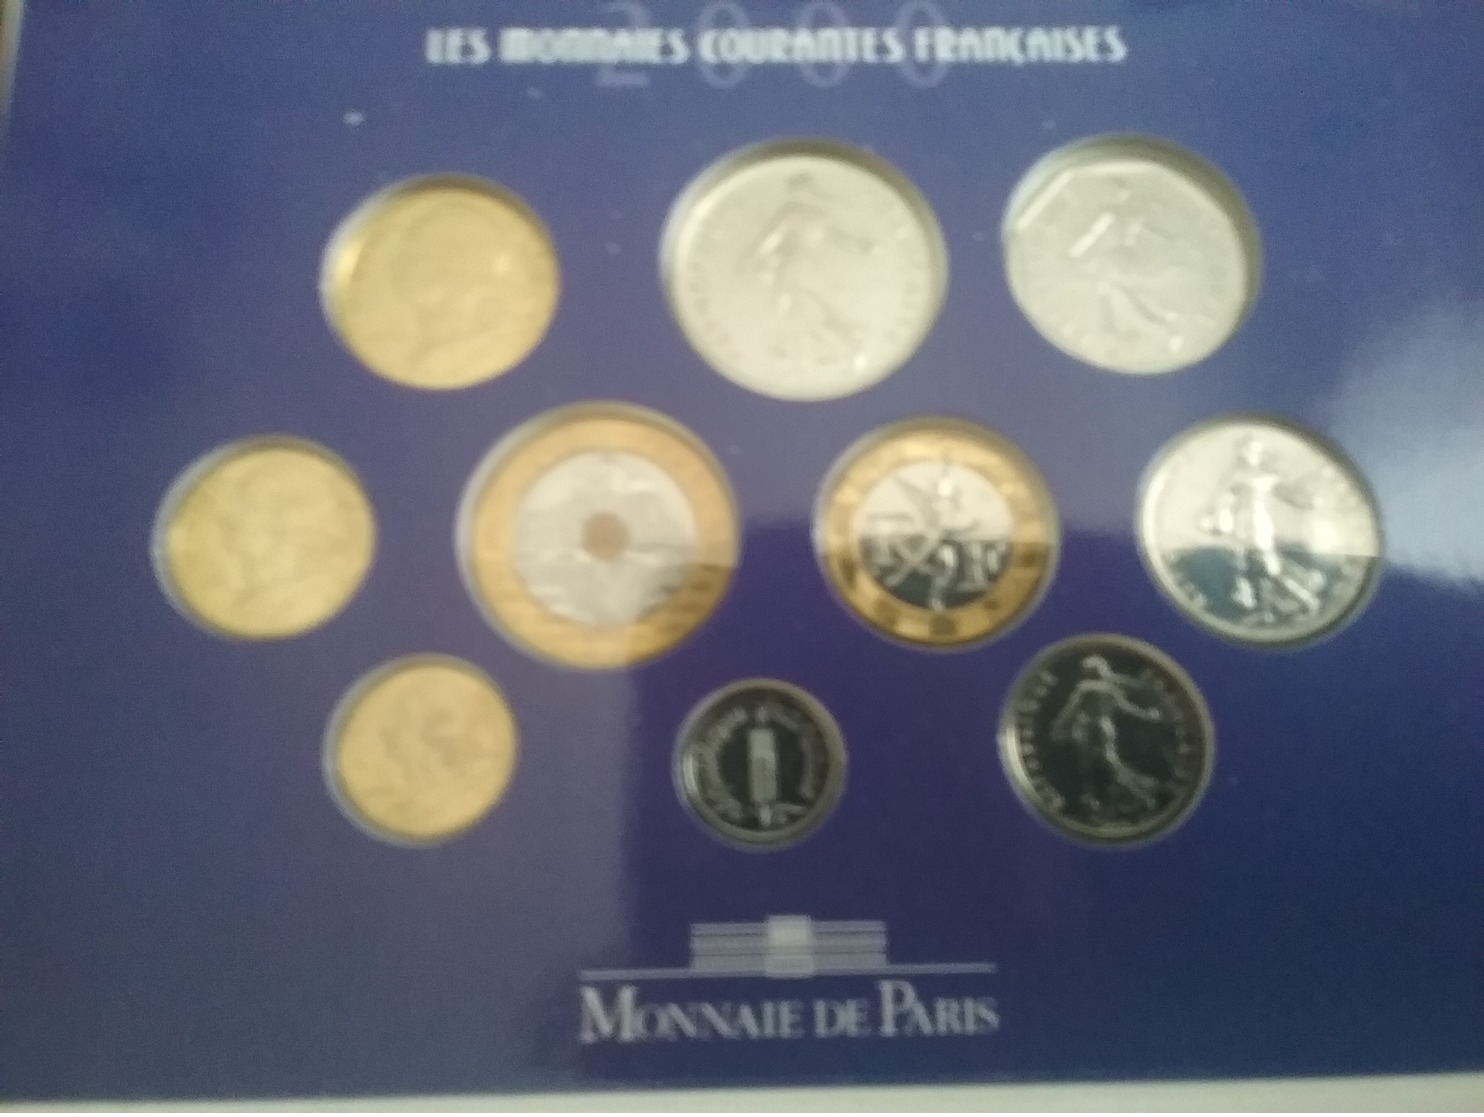 Coffret Monnaie de Paris Les monnaies courantes françaises 2000 Brillant Universel